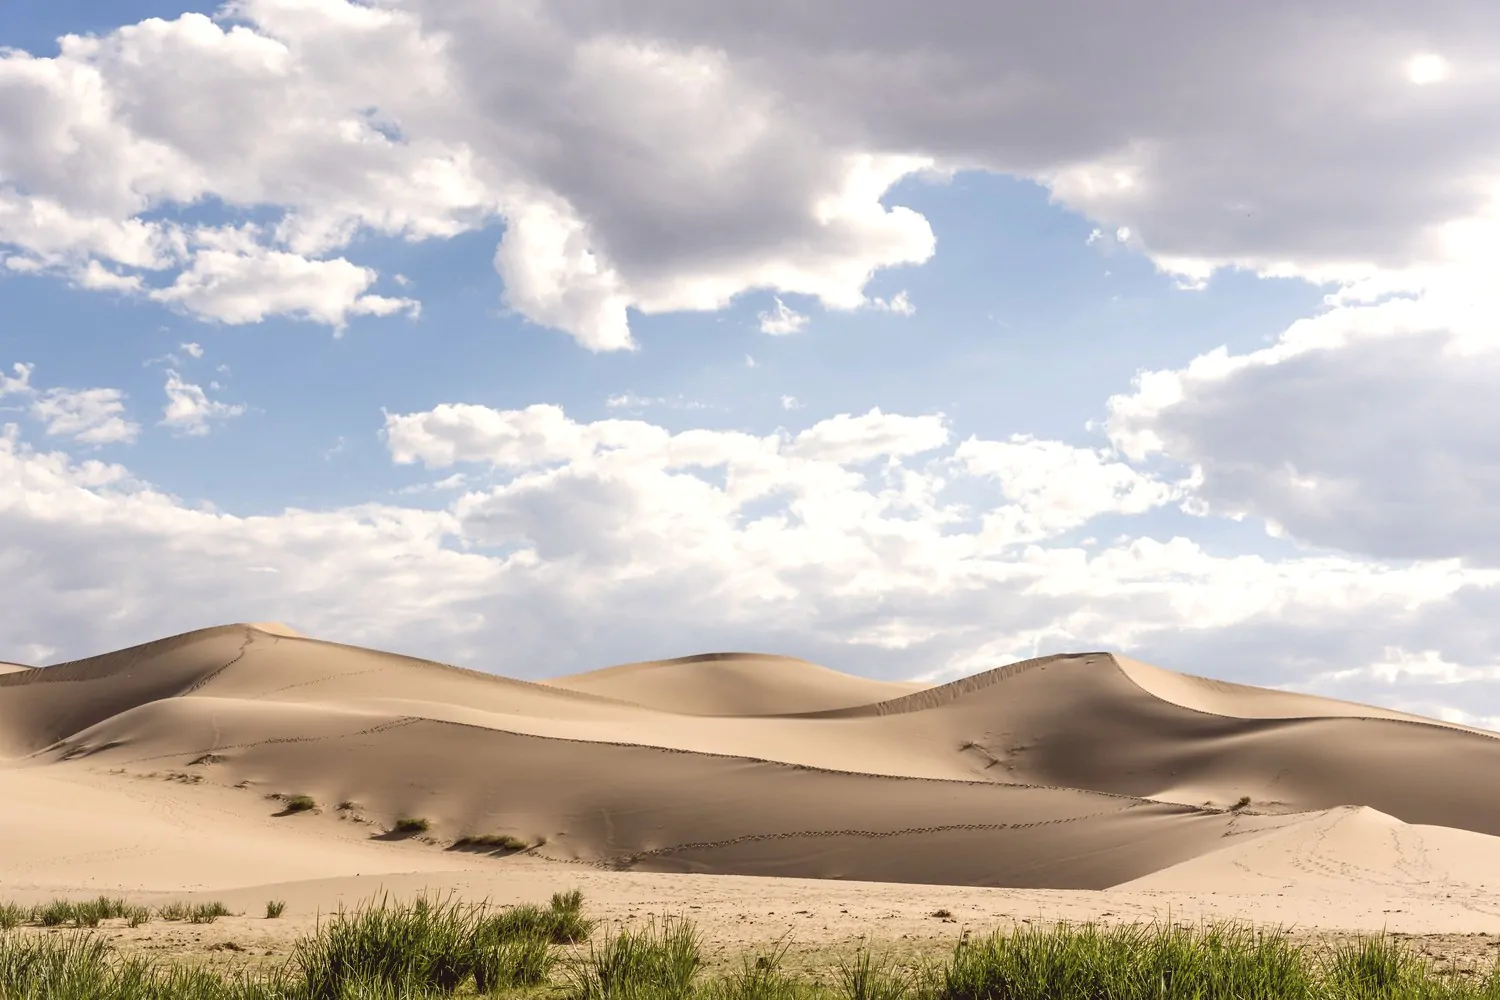 Khongor Sand dunes in Gobi desert